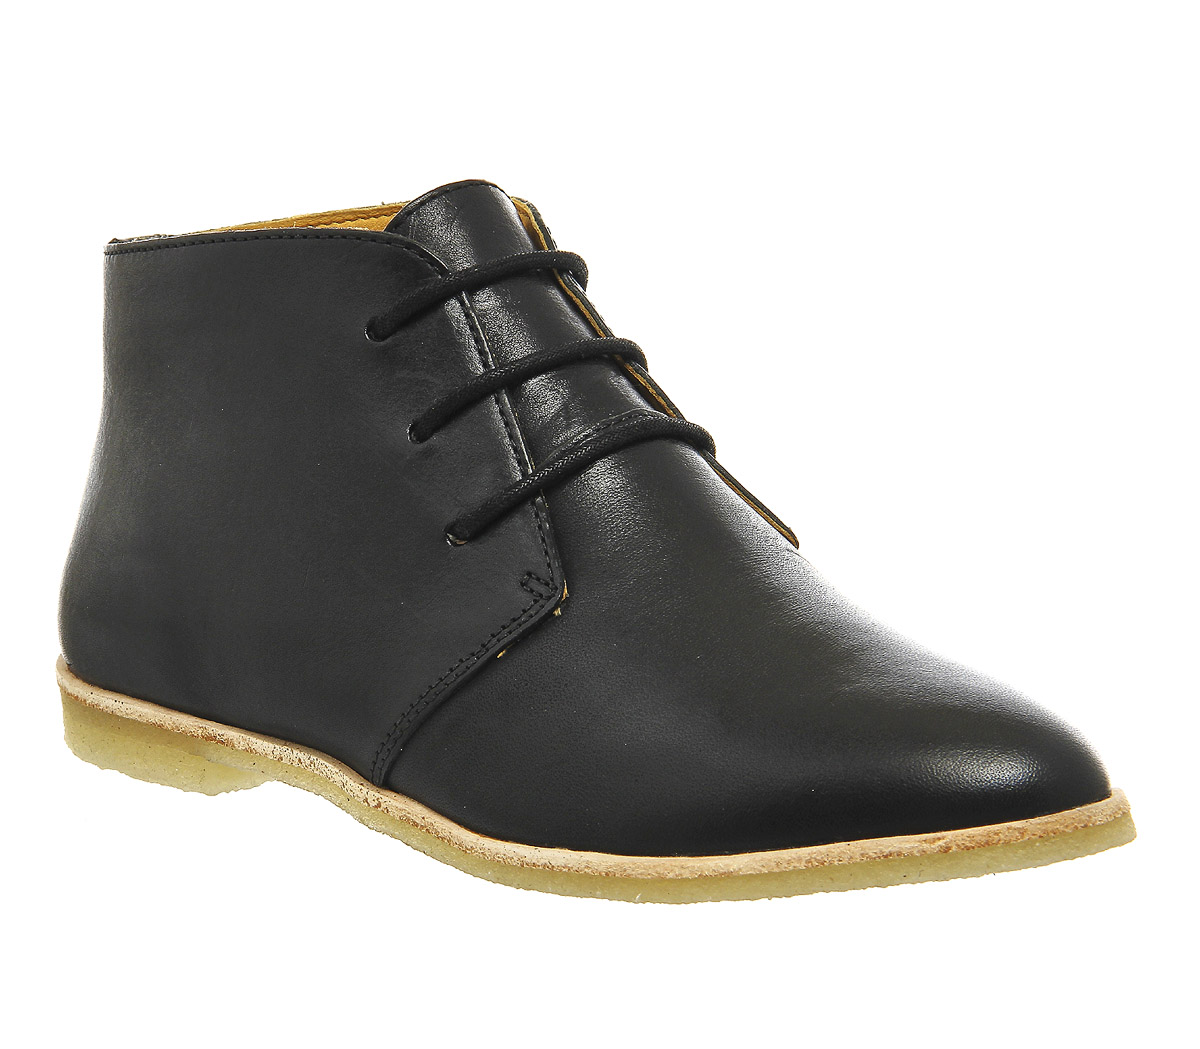 clarks originals phenia black leather desert boots